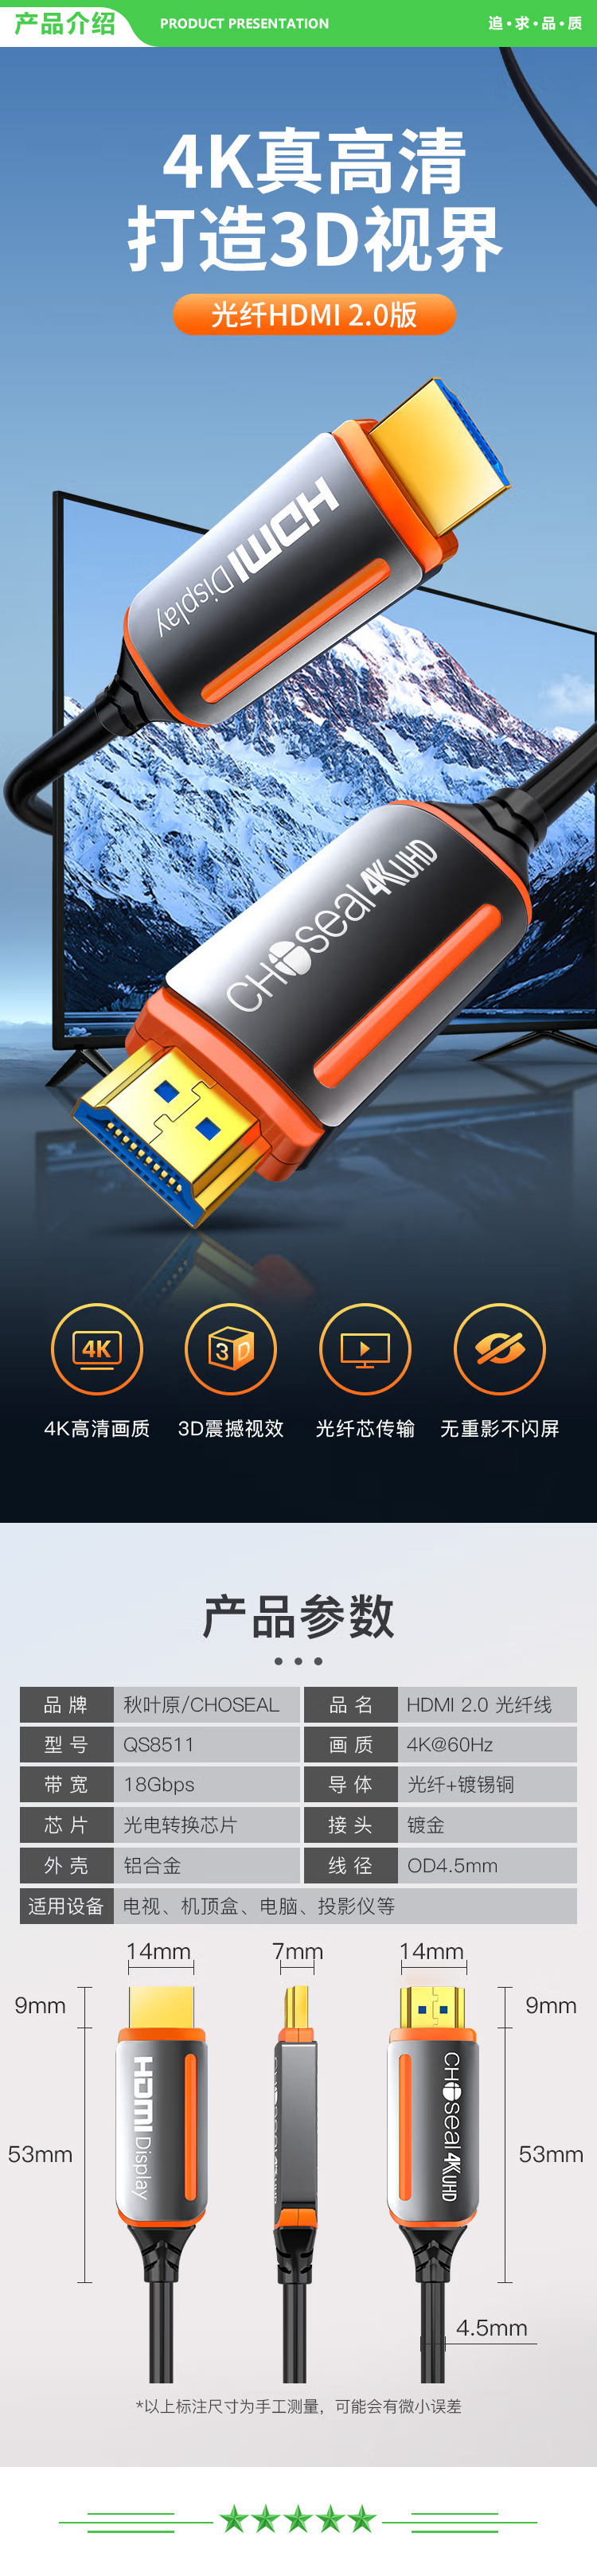 秋叶原 CHOSEAL QS8511 光纤HDMI线2.0版 4K60Hz发烧级高清线 电脑连接电视投影仪显示器3D视频线工程装修连接线 2米 2.jpg